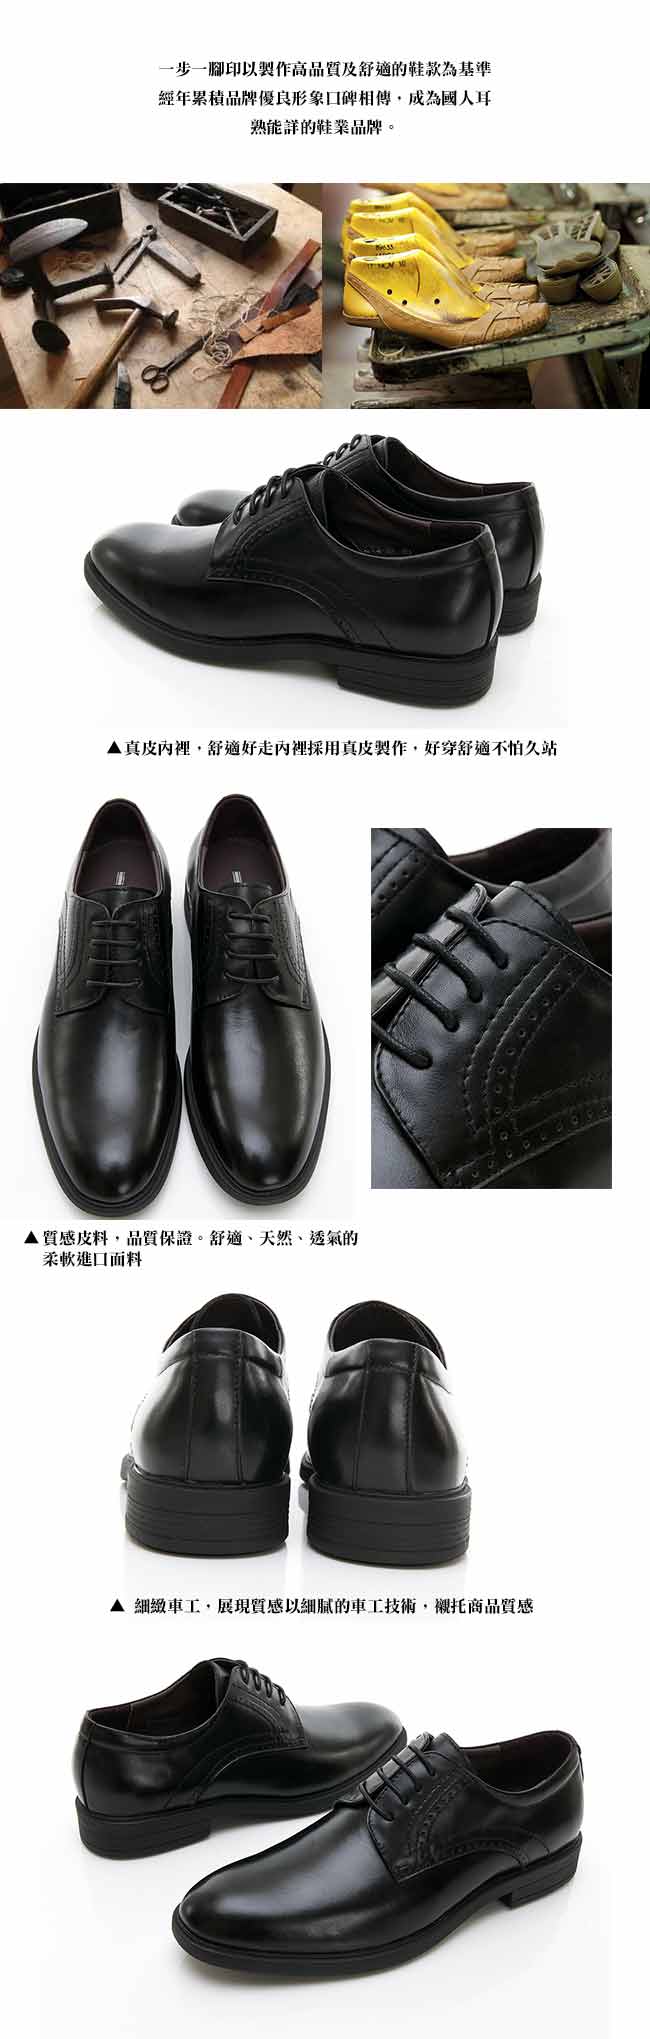 【GEORGE 喬治皮鞋】輕量系列 綁帶柔軟紳士皮鞋-黑色